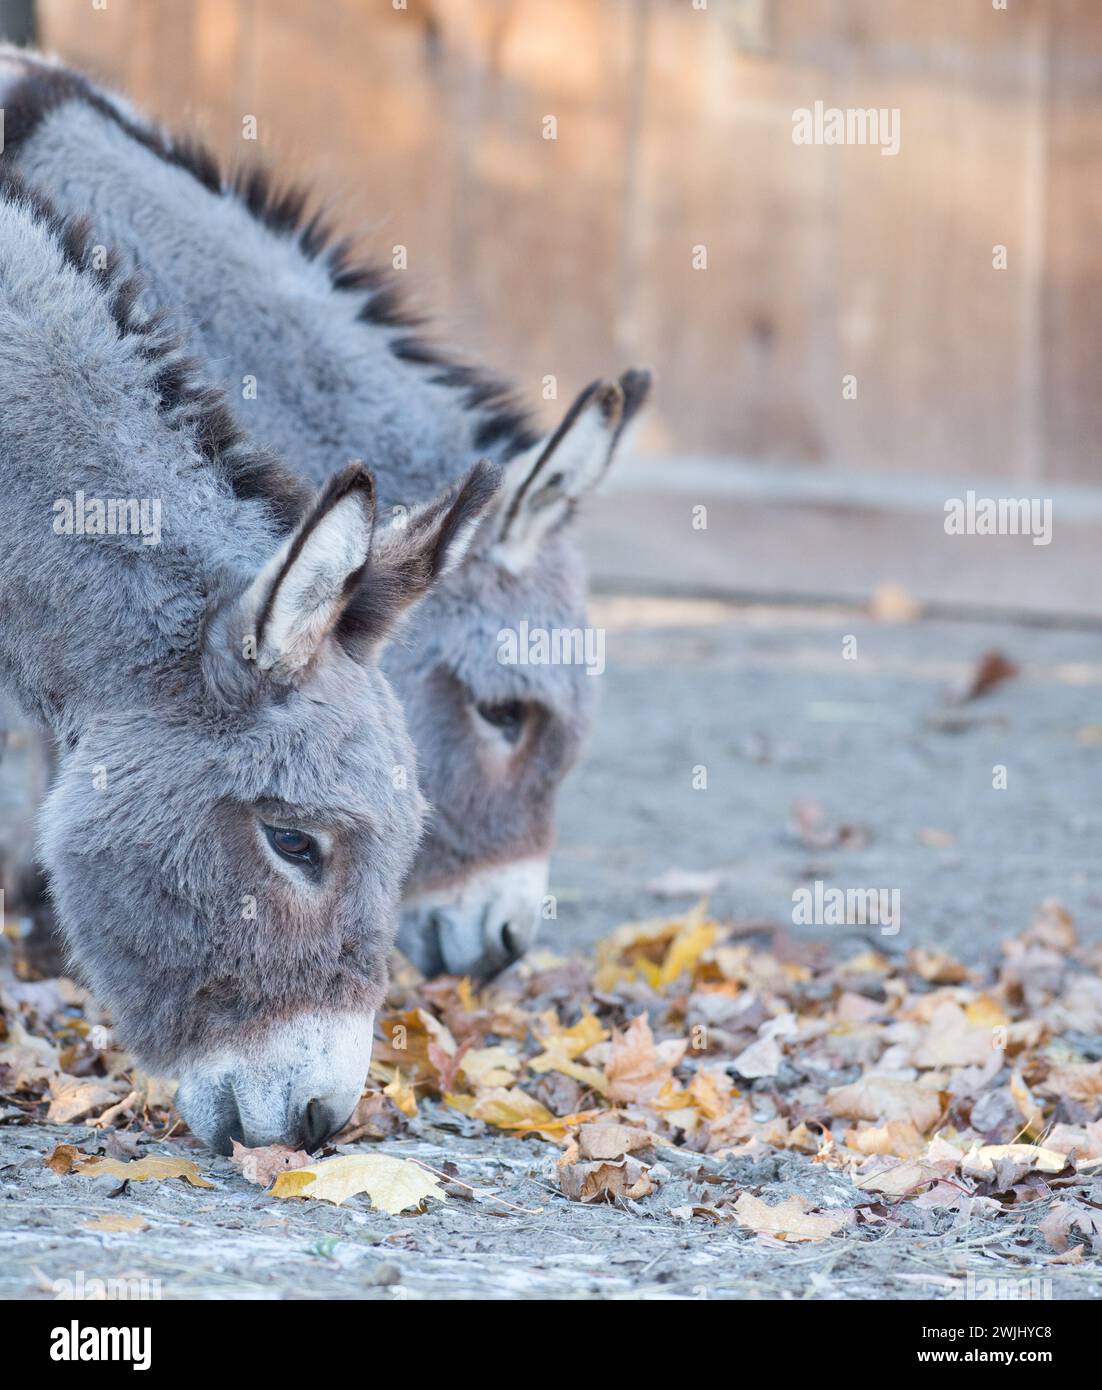 Zwei kleine Esel niedliche Tiere mit Köpfen nach unten schnüffeln herbstlicher Herbst lässt Ohren nach vorne schauen und vertikalen Bildraum für Typ ländliche Farm canada Stockfoto